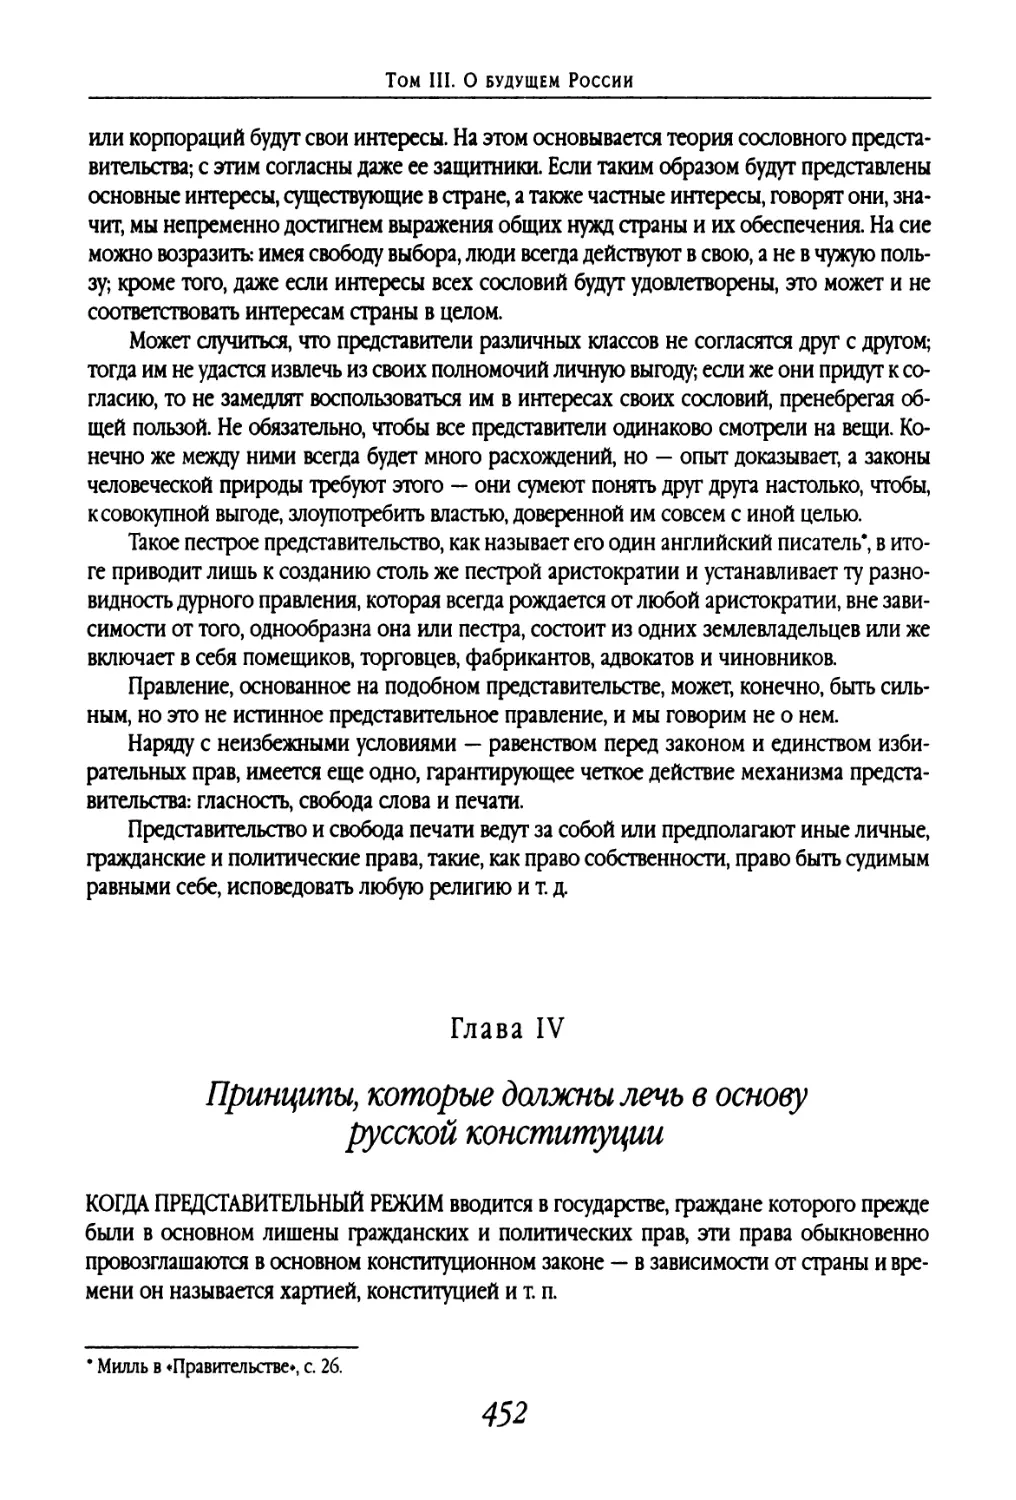 Глава IV. Принципы, которые должны лечь в основу русской конституции